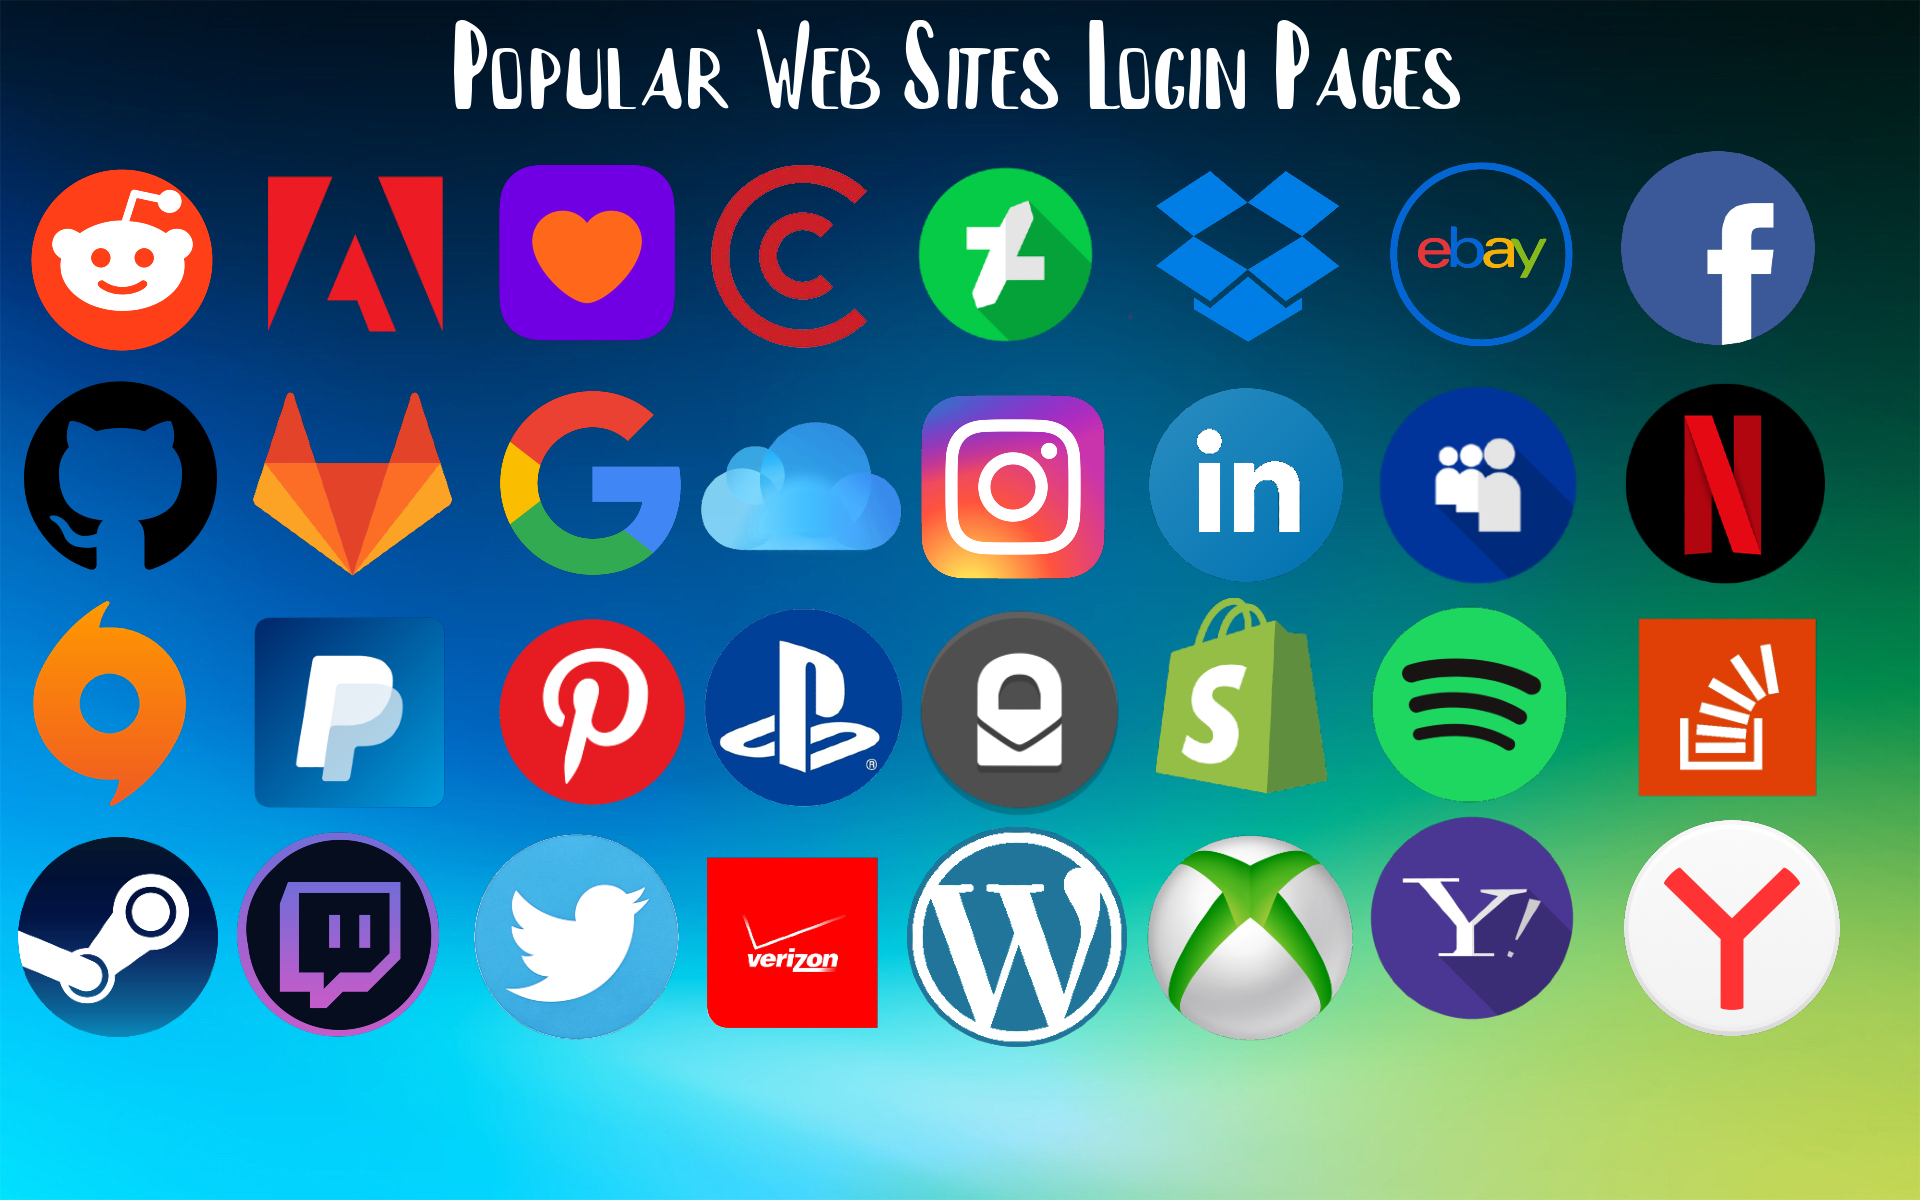 Popular-Web-Sites-Login-Pages.jpg